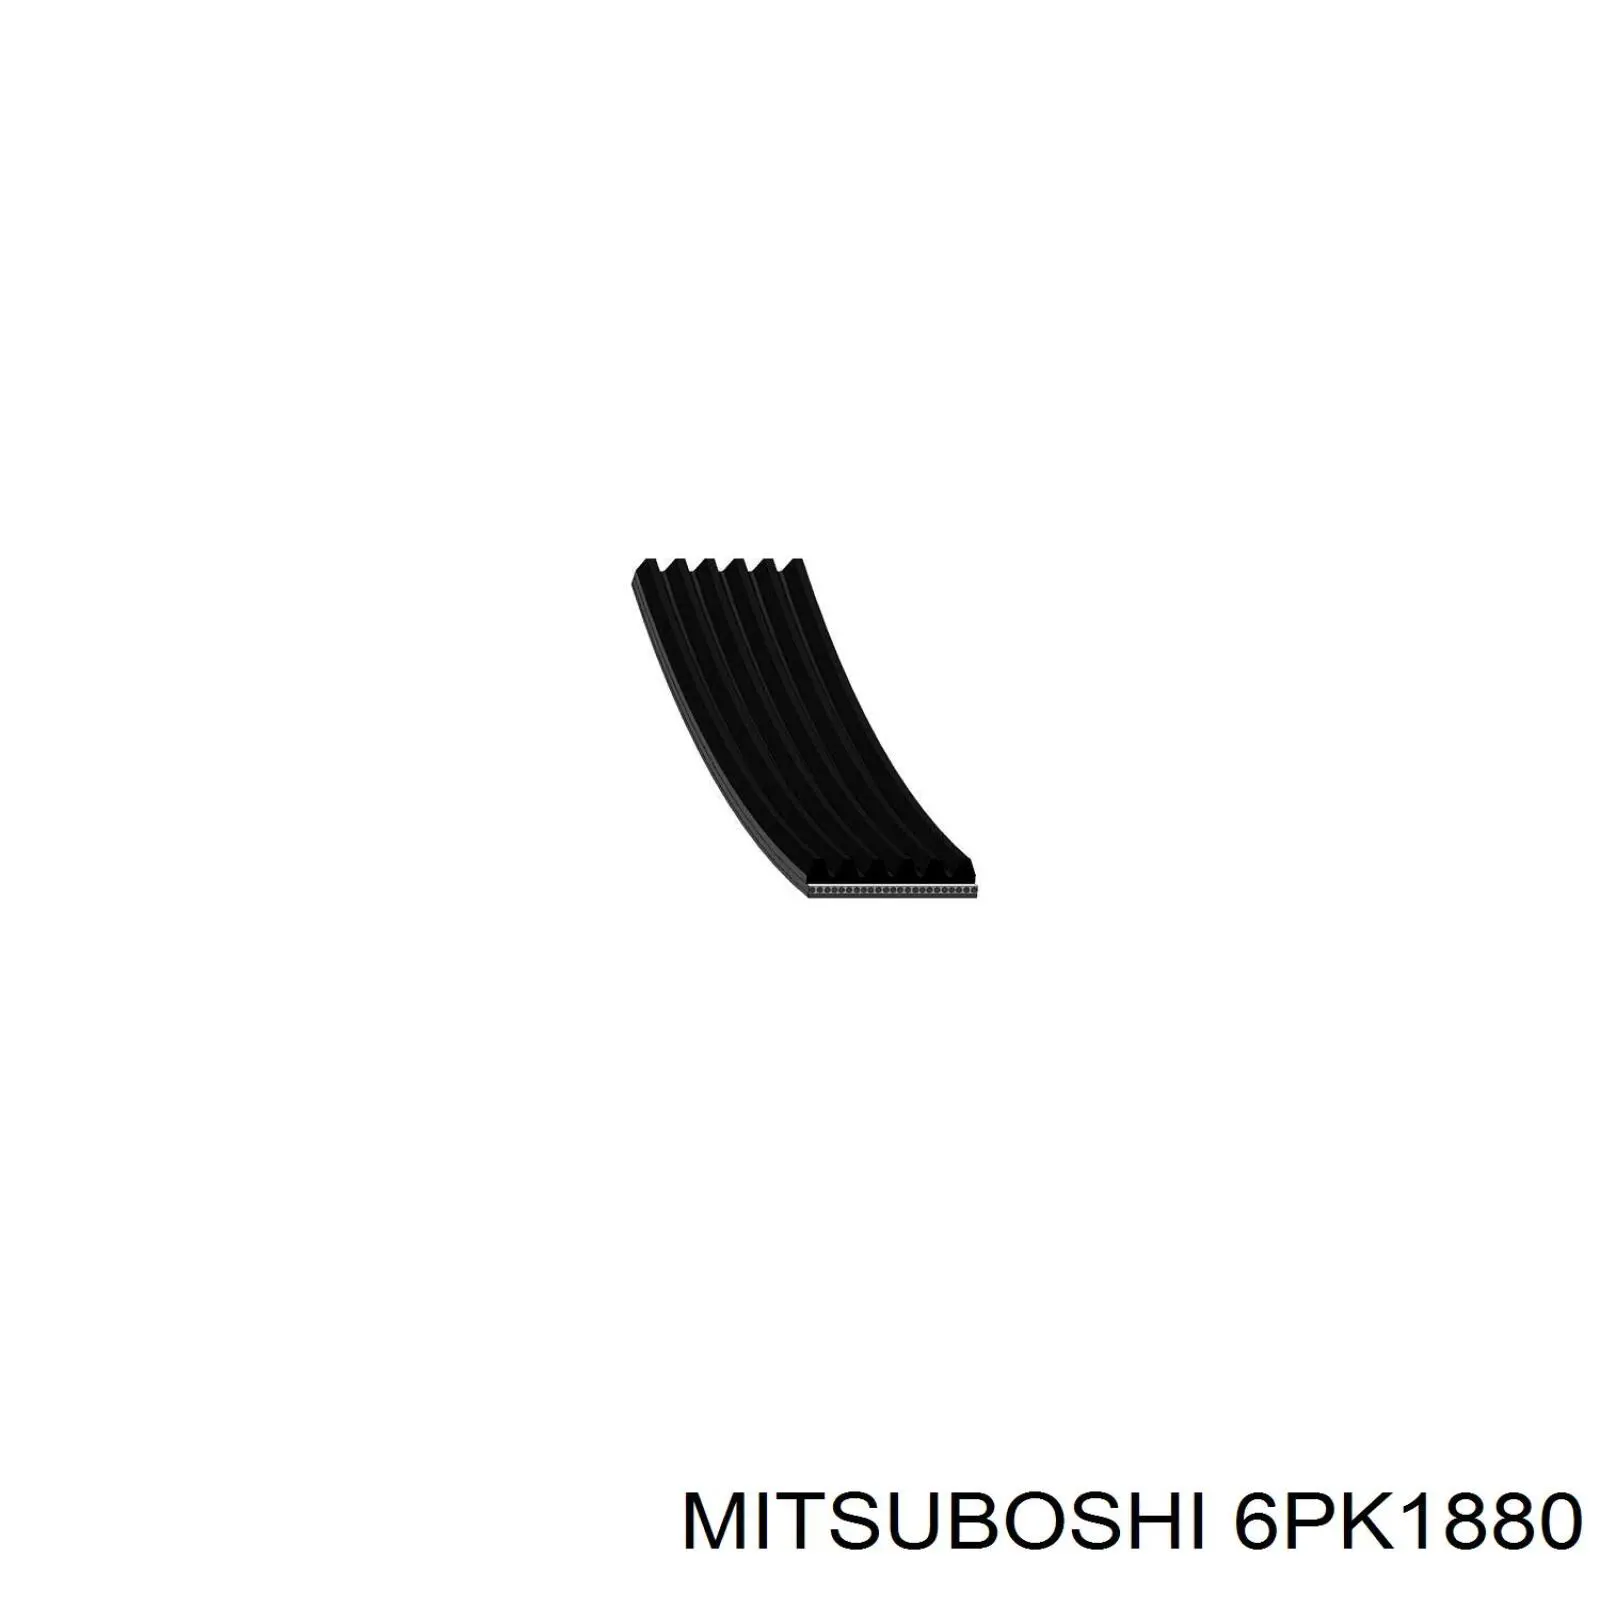 6PK1880 Mitsuboshi correia dos conjuntos de transmissão